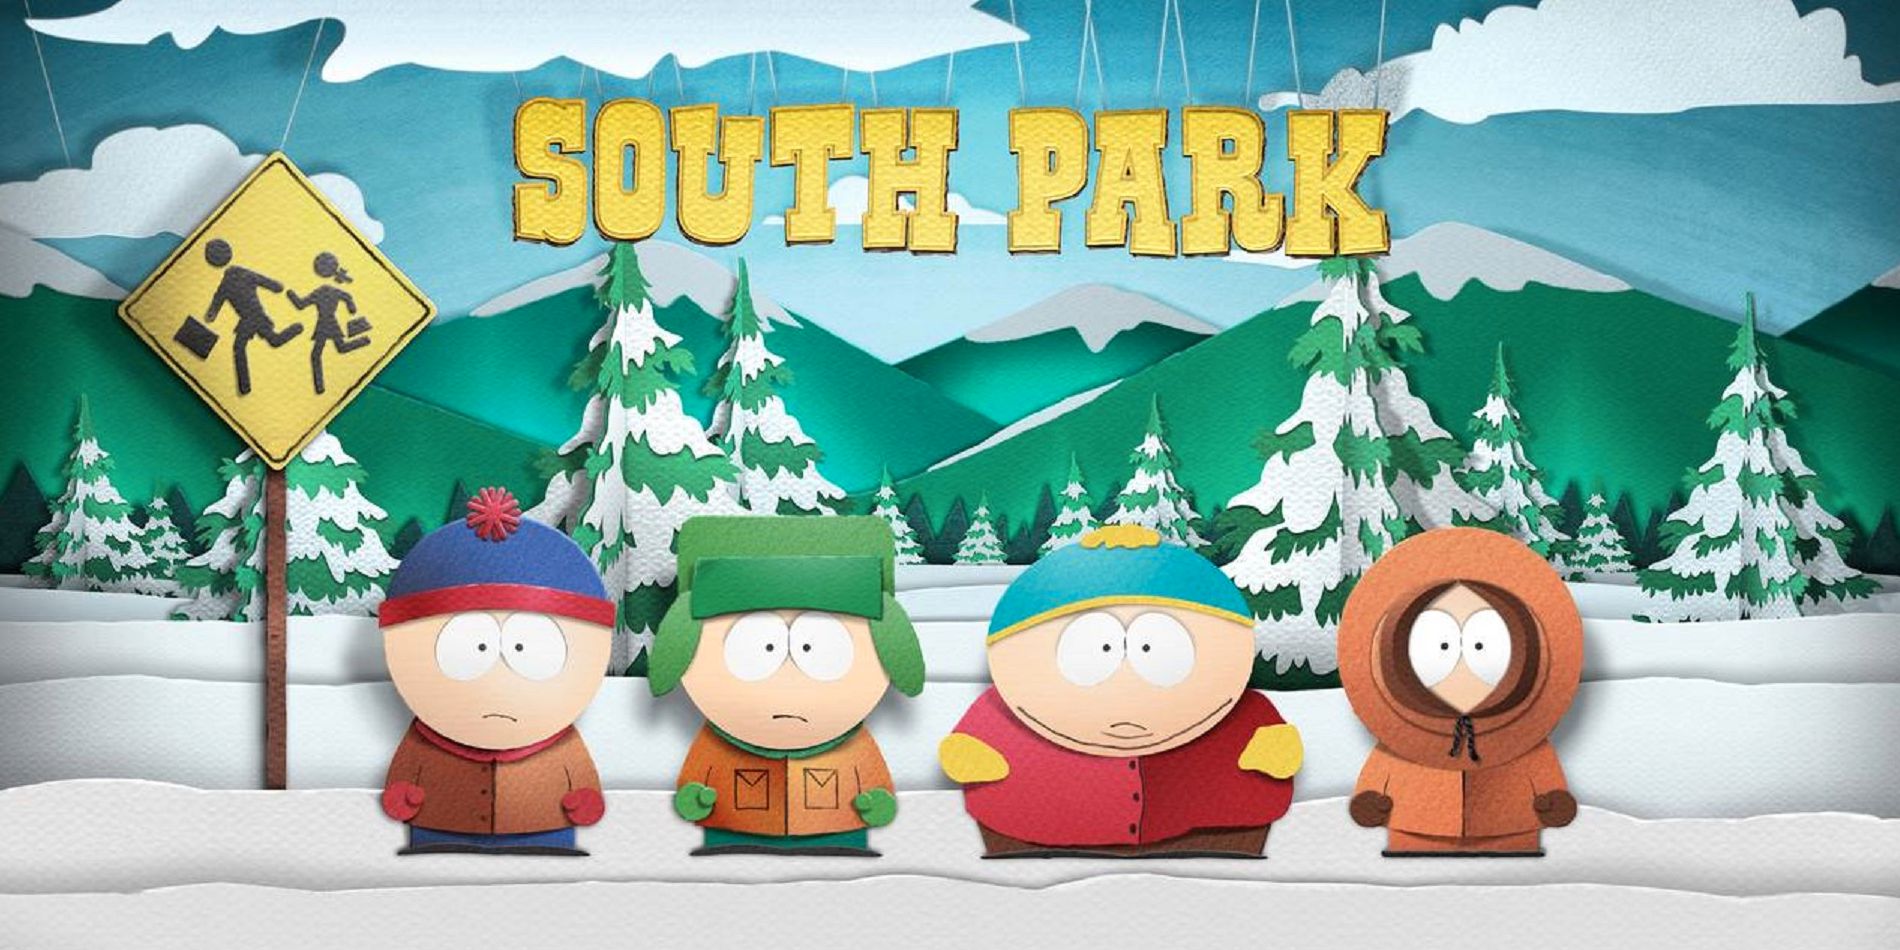 ¿Es el nuevo juego de South Park otro juego de rol?